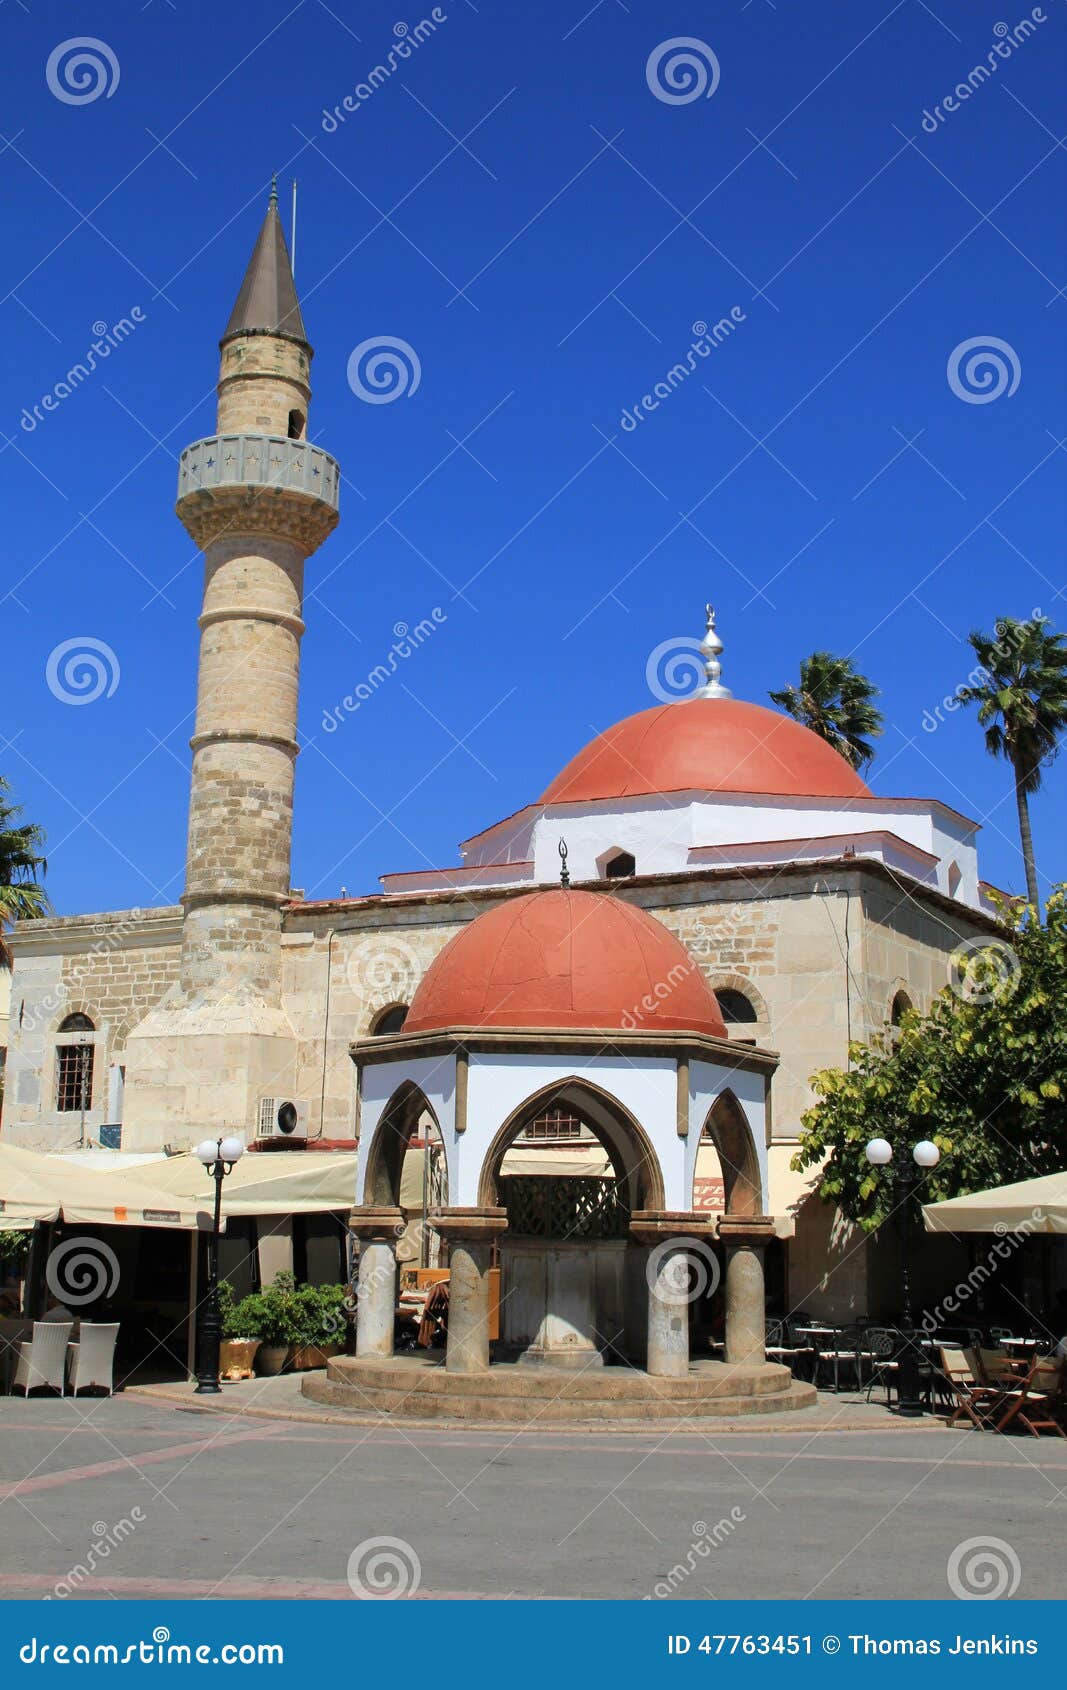 Alte Moschee auf griechischer Insel von Kos mit Minarett. Ansicht des verwickelt geschnitzten alten Steins schnitzte Moschee mit Hauben auf Kos-Insel in Griechenland